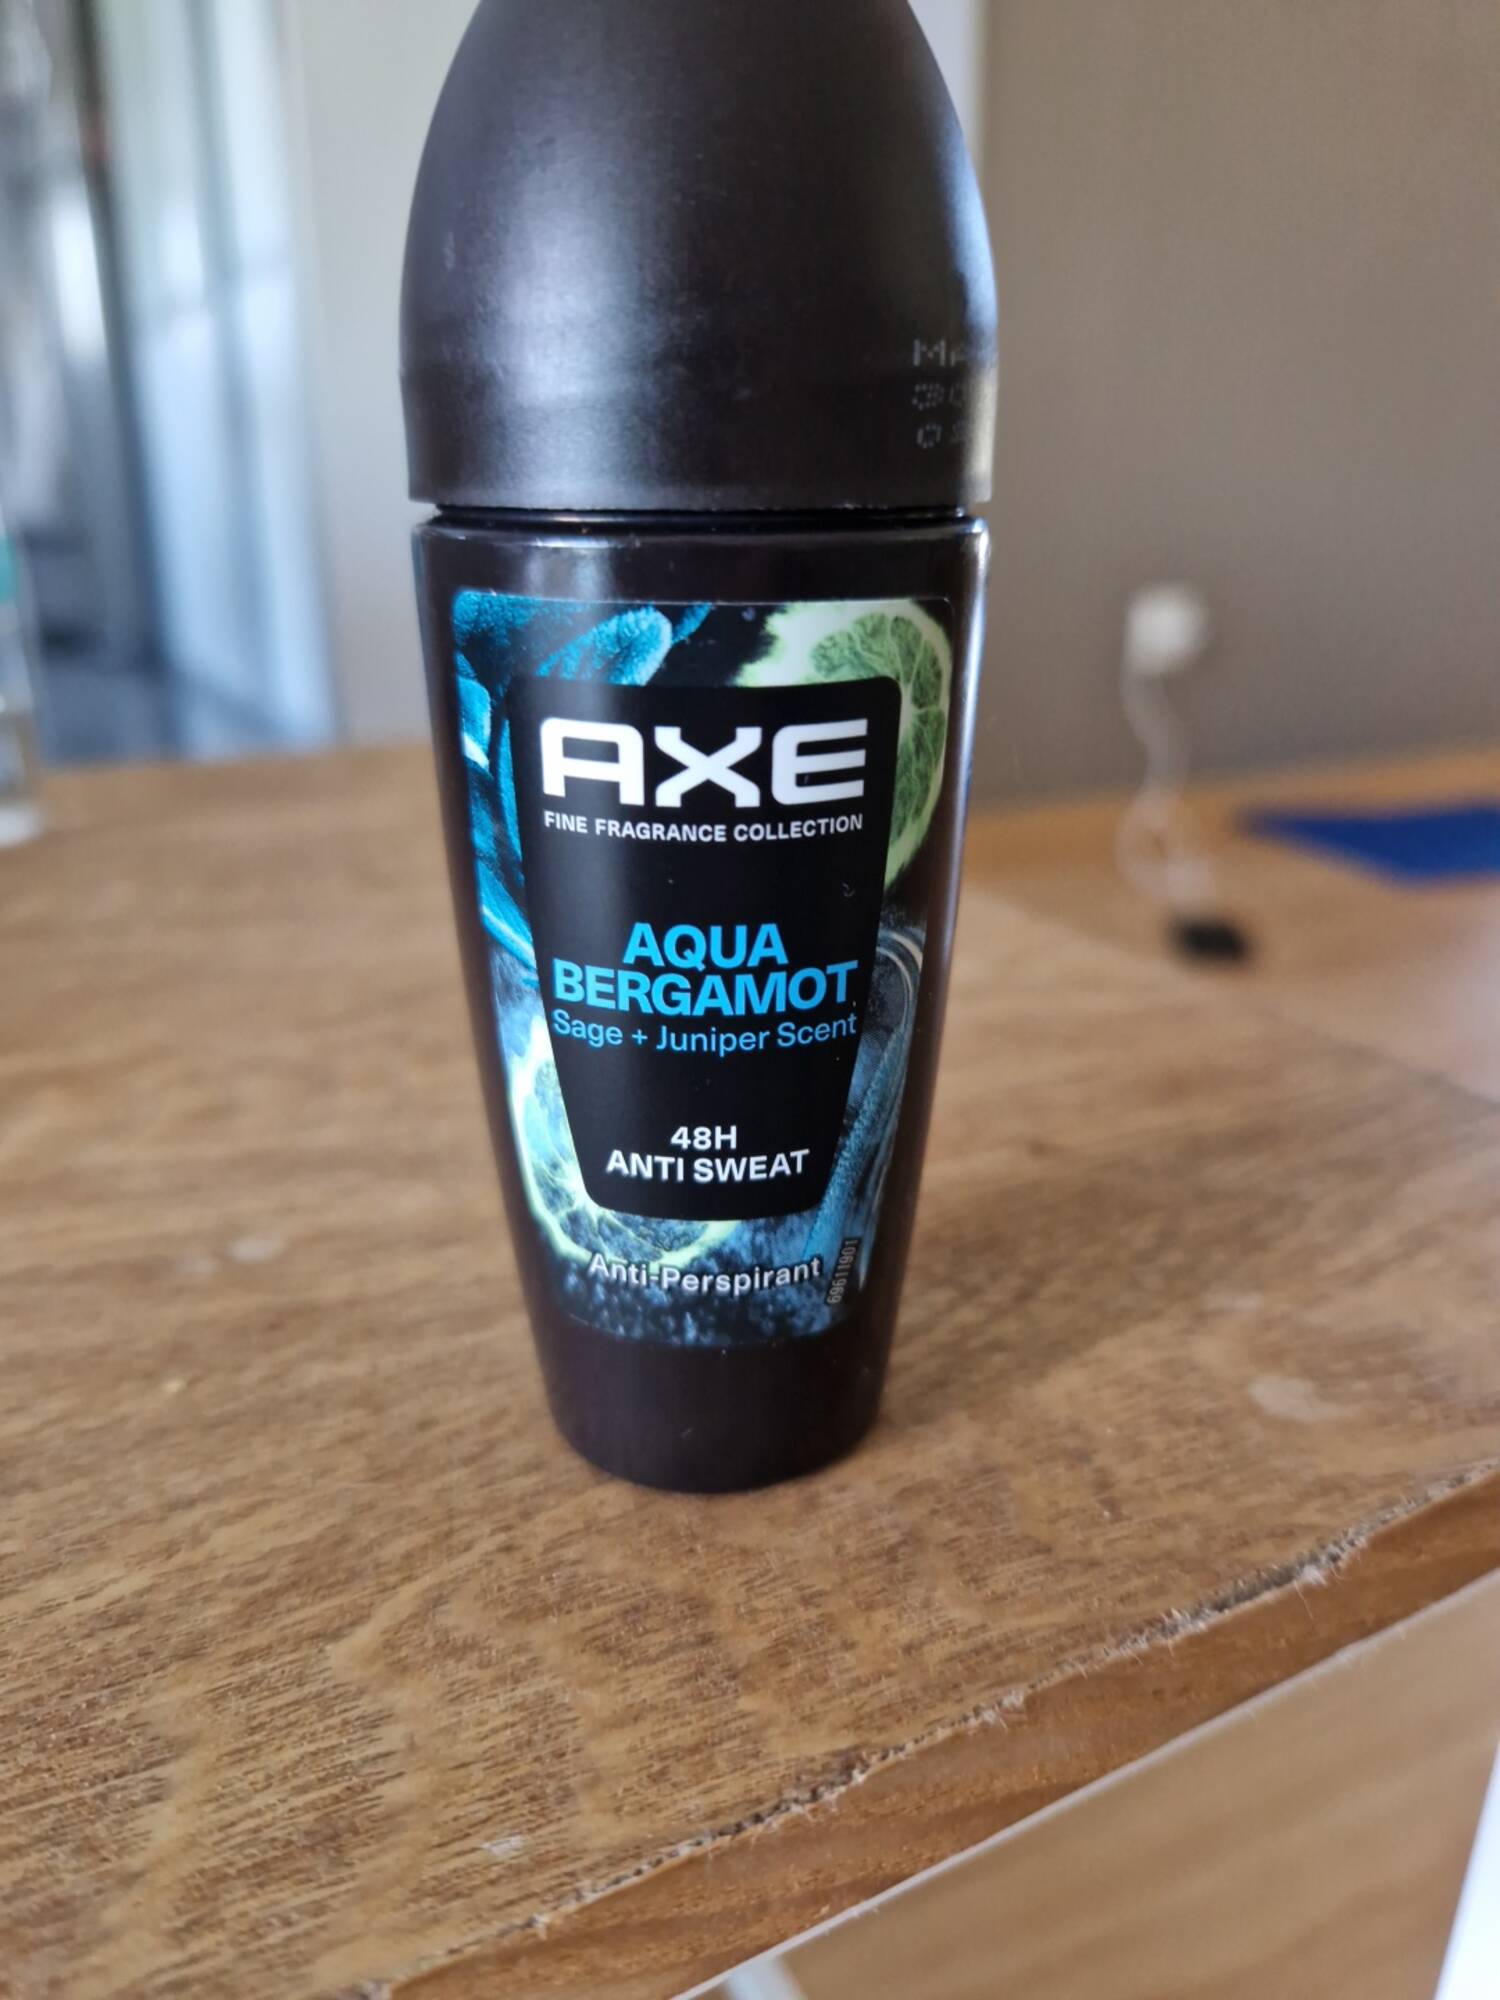 AXE - Aqua bergamot - Antiperspirant 48h